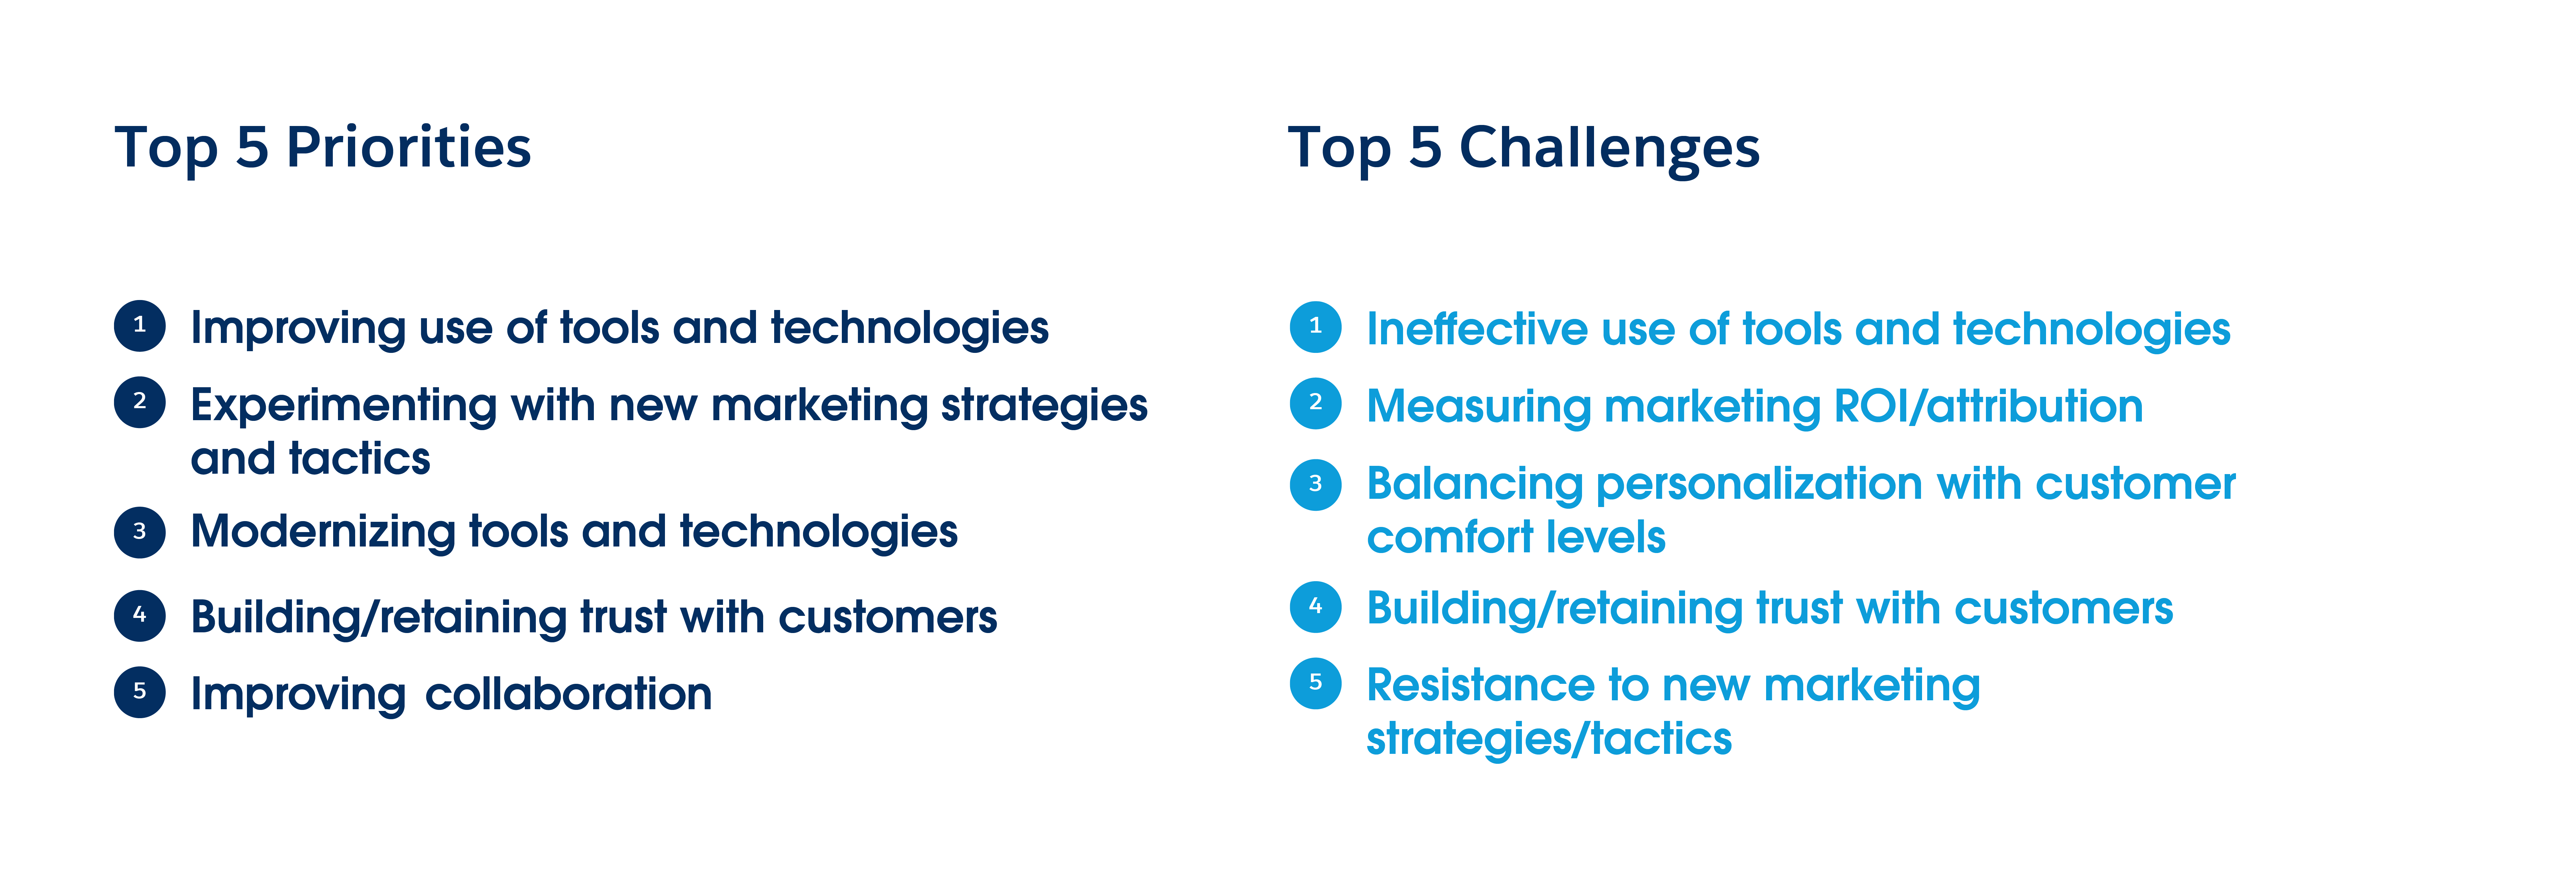 روندهای بازاریابی: 5 اولویت اصلی و 5 چالش اصلی